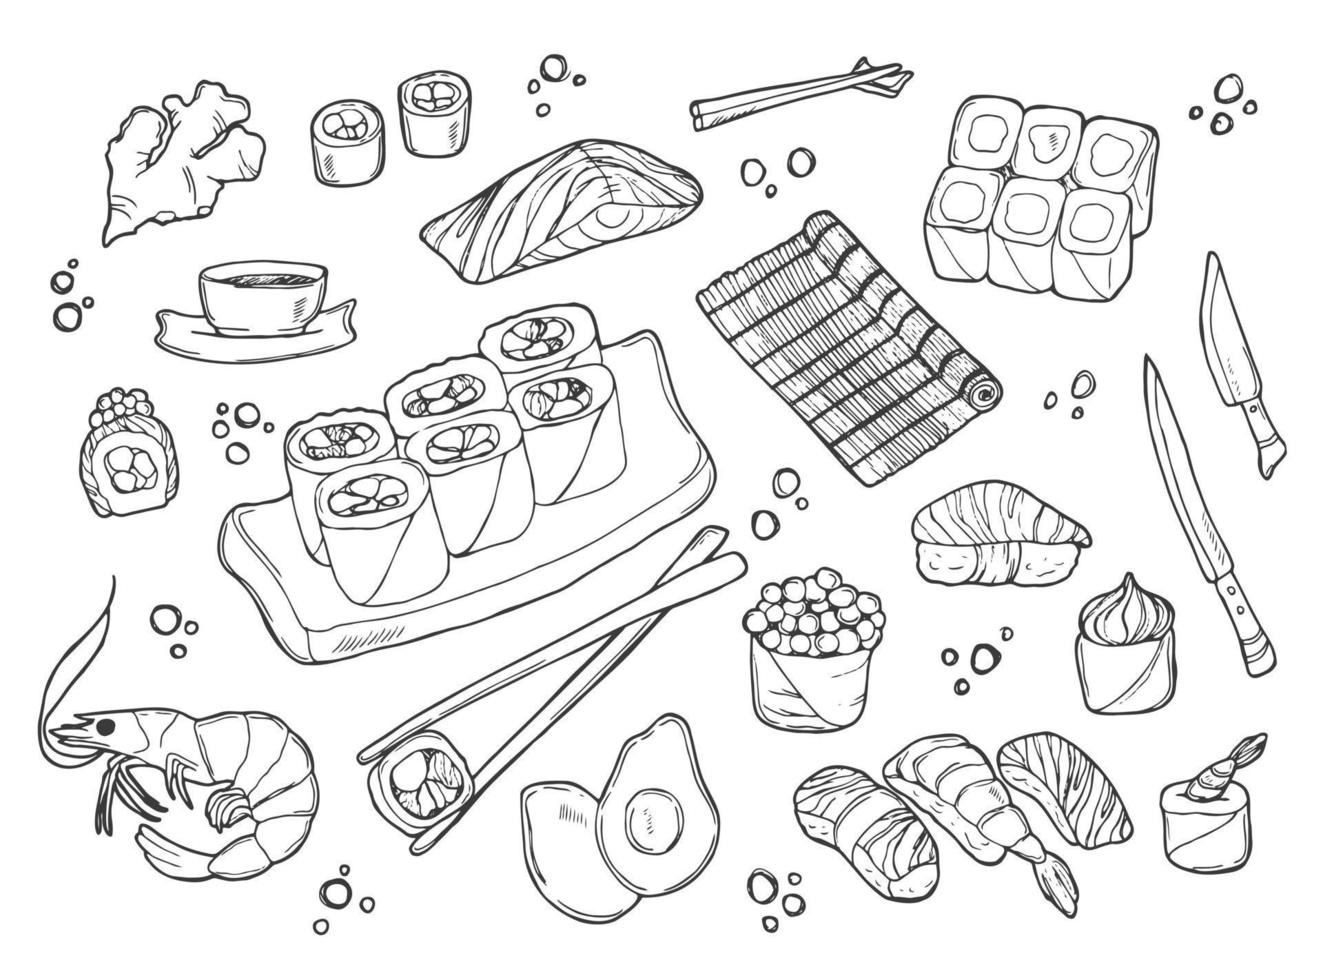 Sushi und Brötchen im Doodle-Stil. Gerichte der traditionellen japanischen Küche - Nigiri, Temaki, Tamago, Sashimi, Uramaki, Futomaki. Vektorzeichnung isoliert auf weißem Hintergrund für asiatische Restaurantkarte. vektor